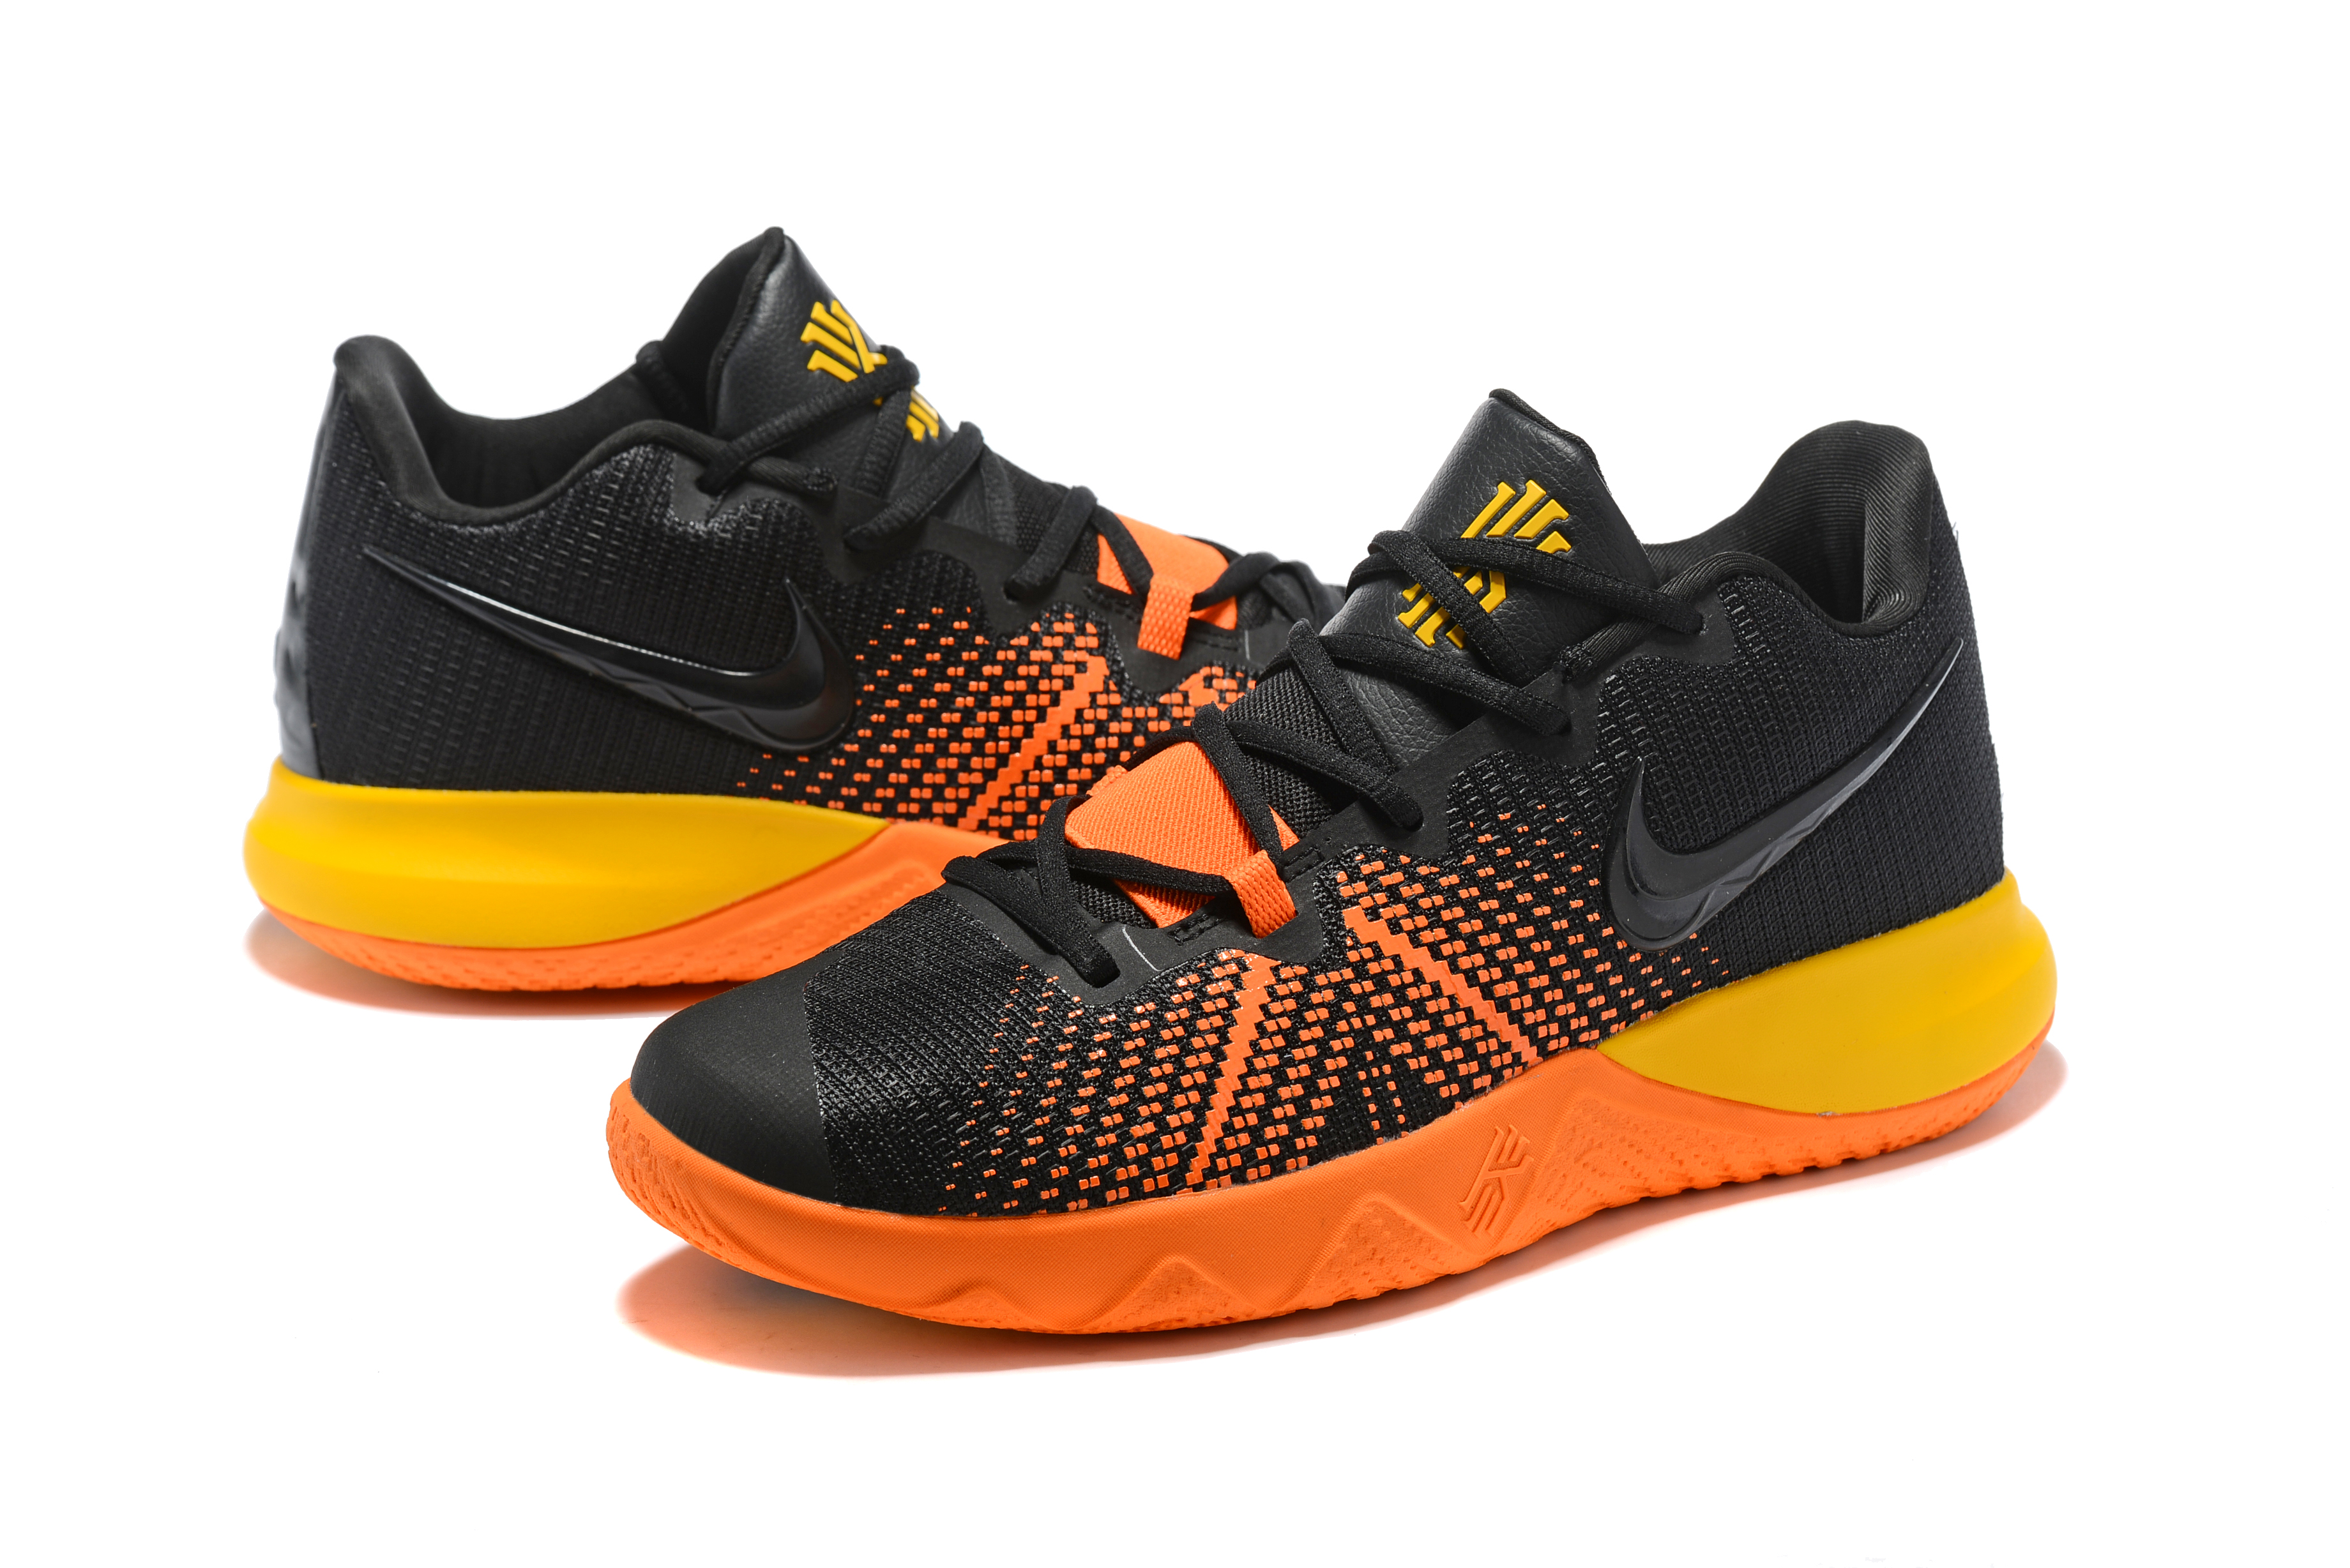 New Men Nike Kyrie Flytrap Black Orange Yellow Shoes